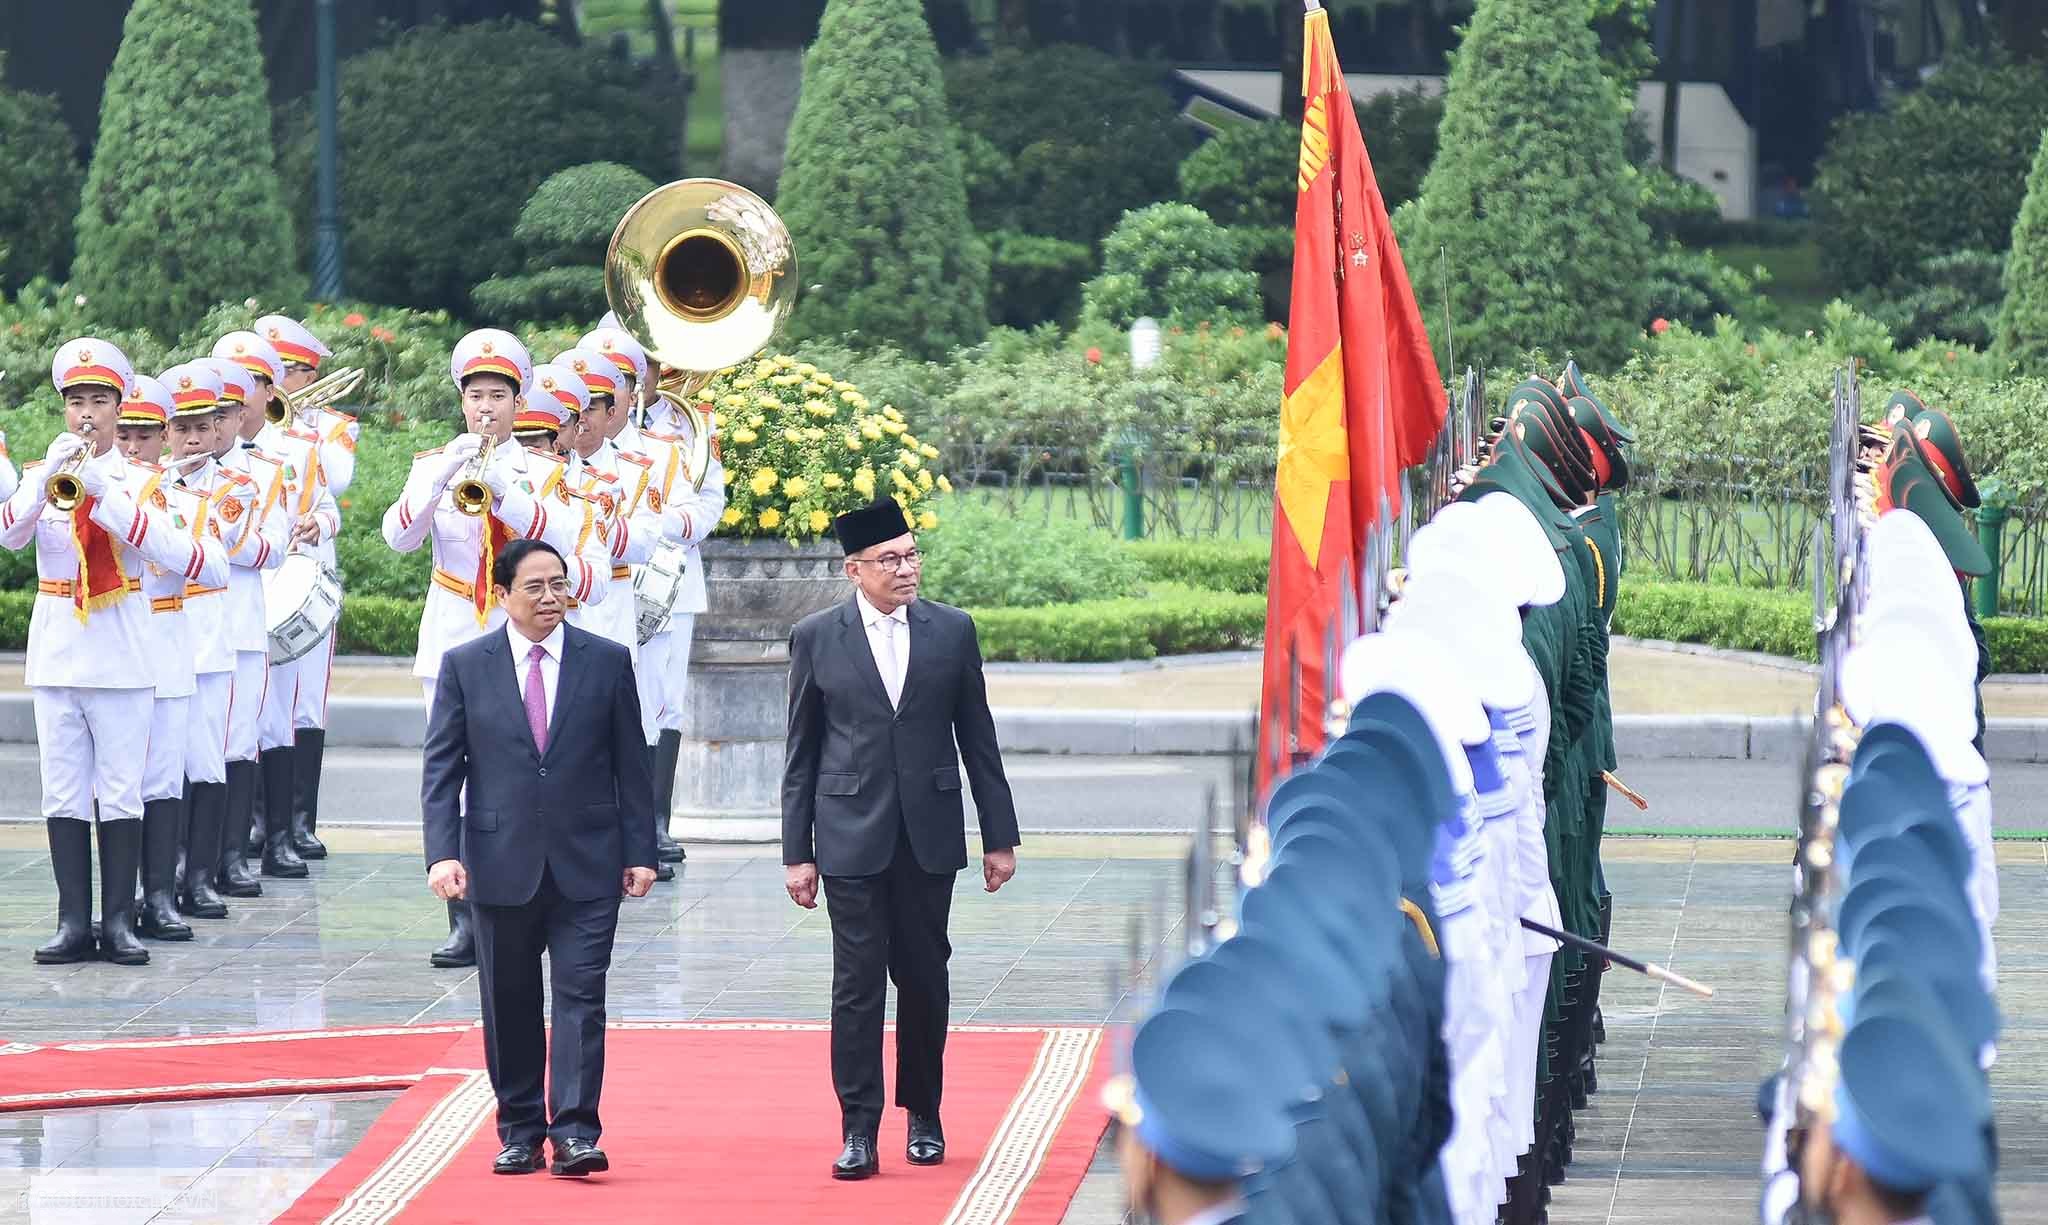 Việt Nam và Malaysia có quan hệ hữu nghị và giao thương lâu đời. Hiện Malaysia là đối tác thương mại lớn thứ hai của Việt Nam trong khối ASEAN và là thị trường xuất khẩu lớn thứ ba của Việt Nam trong ASEAN.